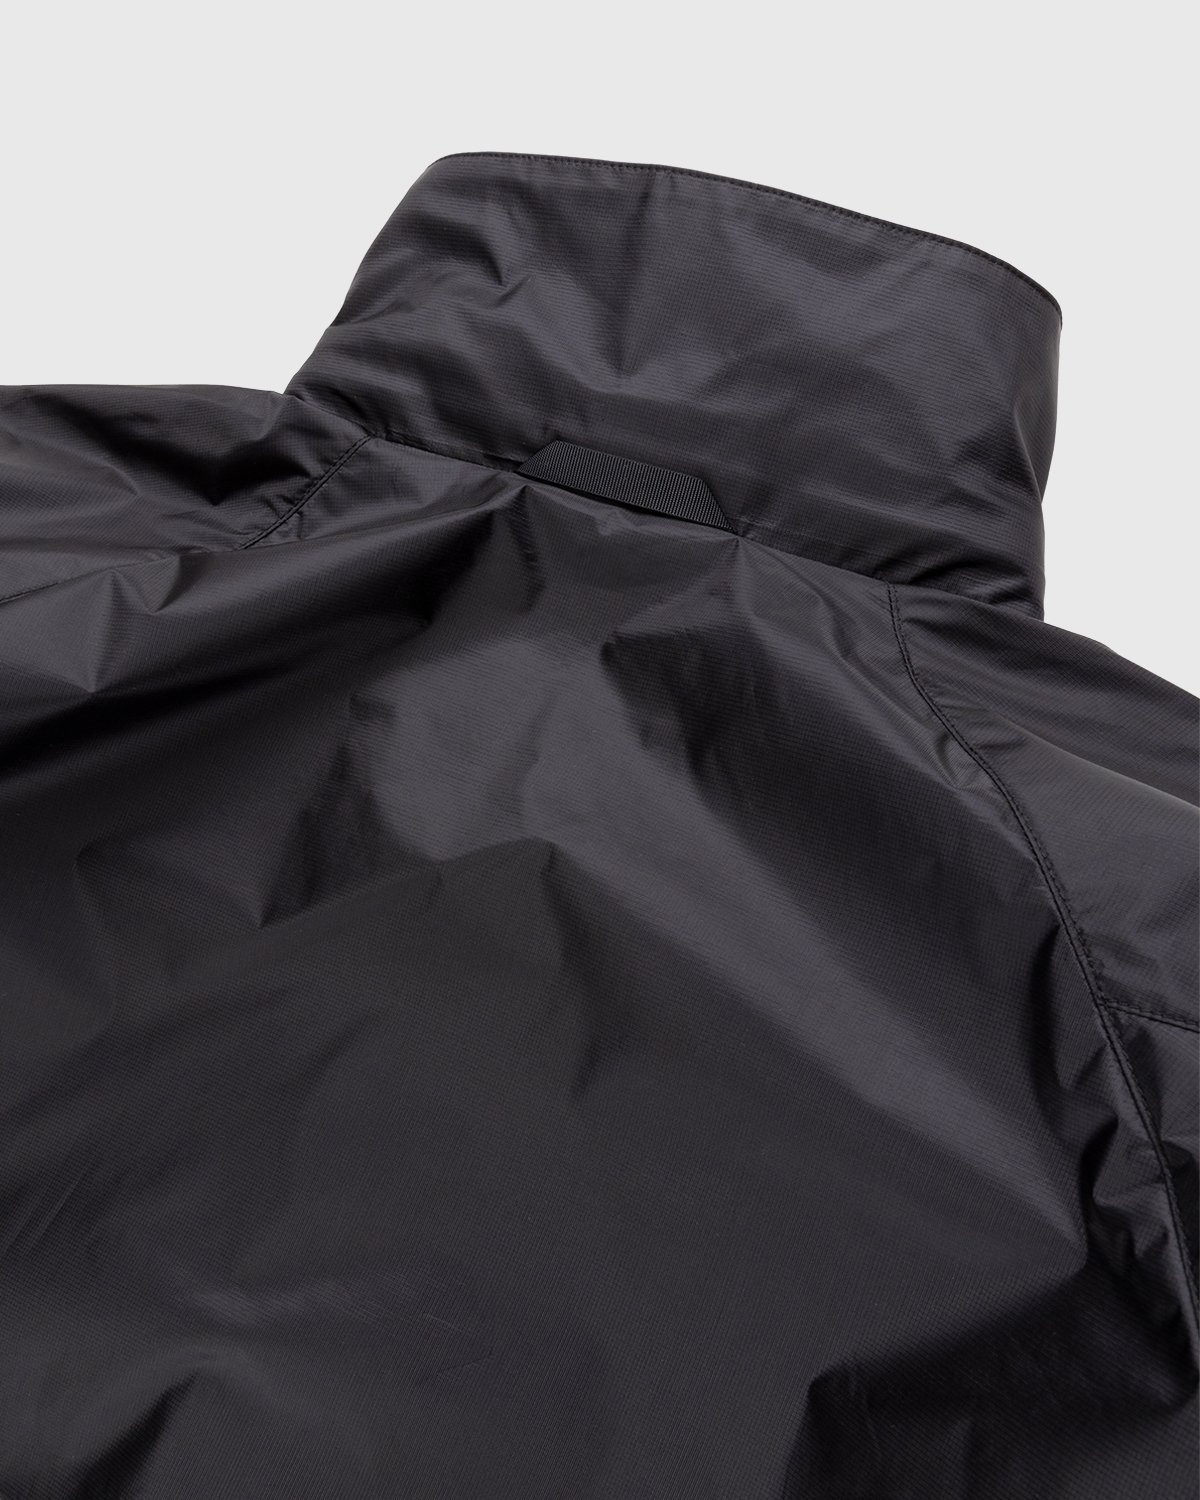 ACRONYM – J95-WS Jacket Black - Jackets - Black - Image 3